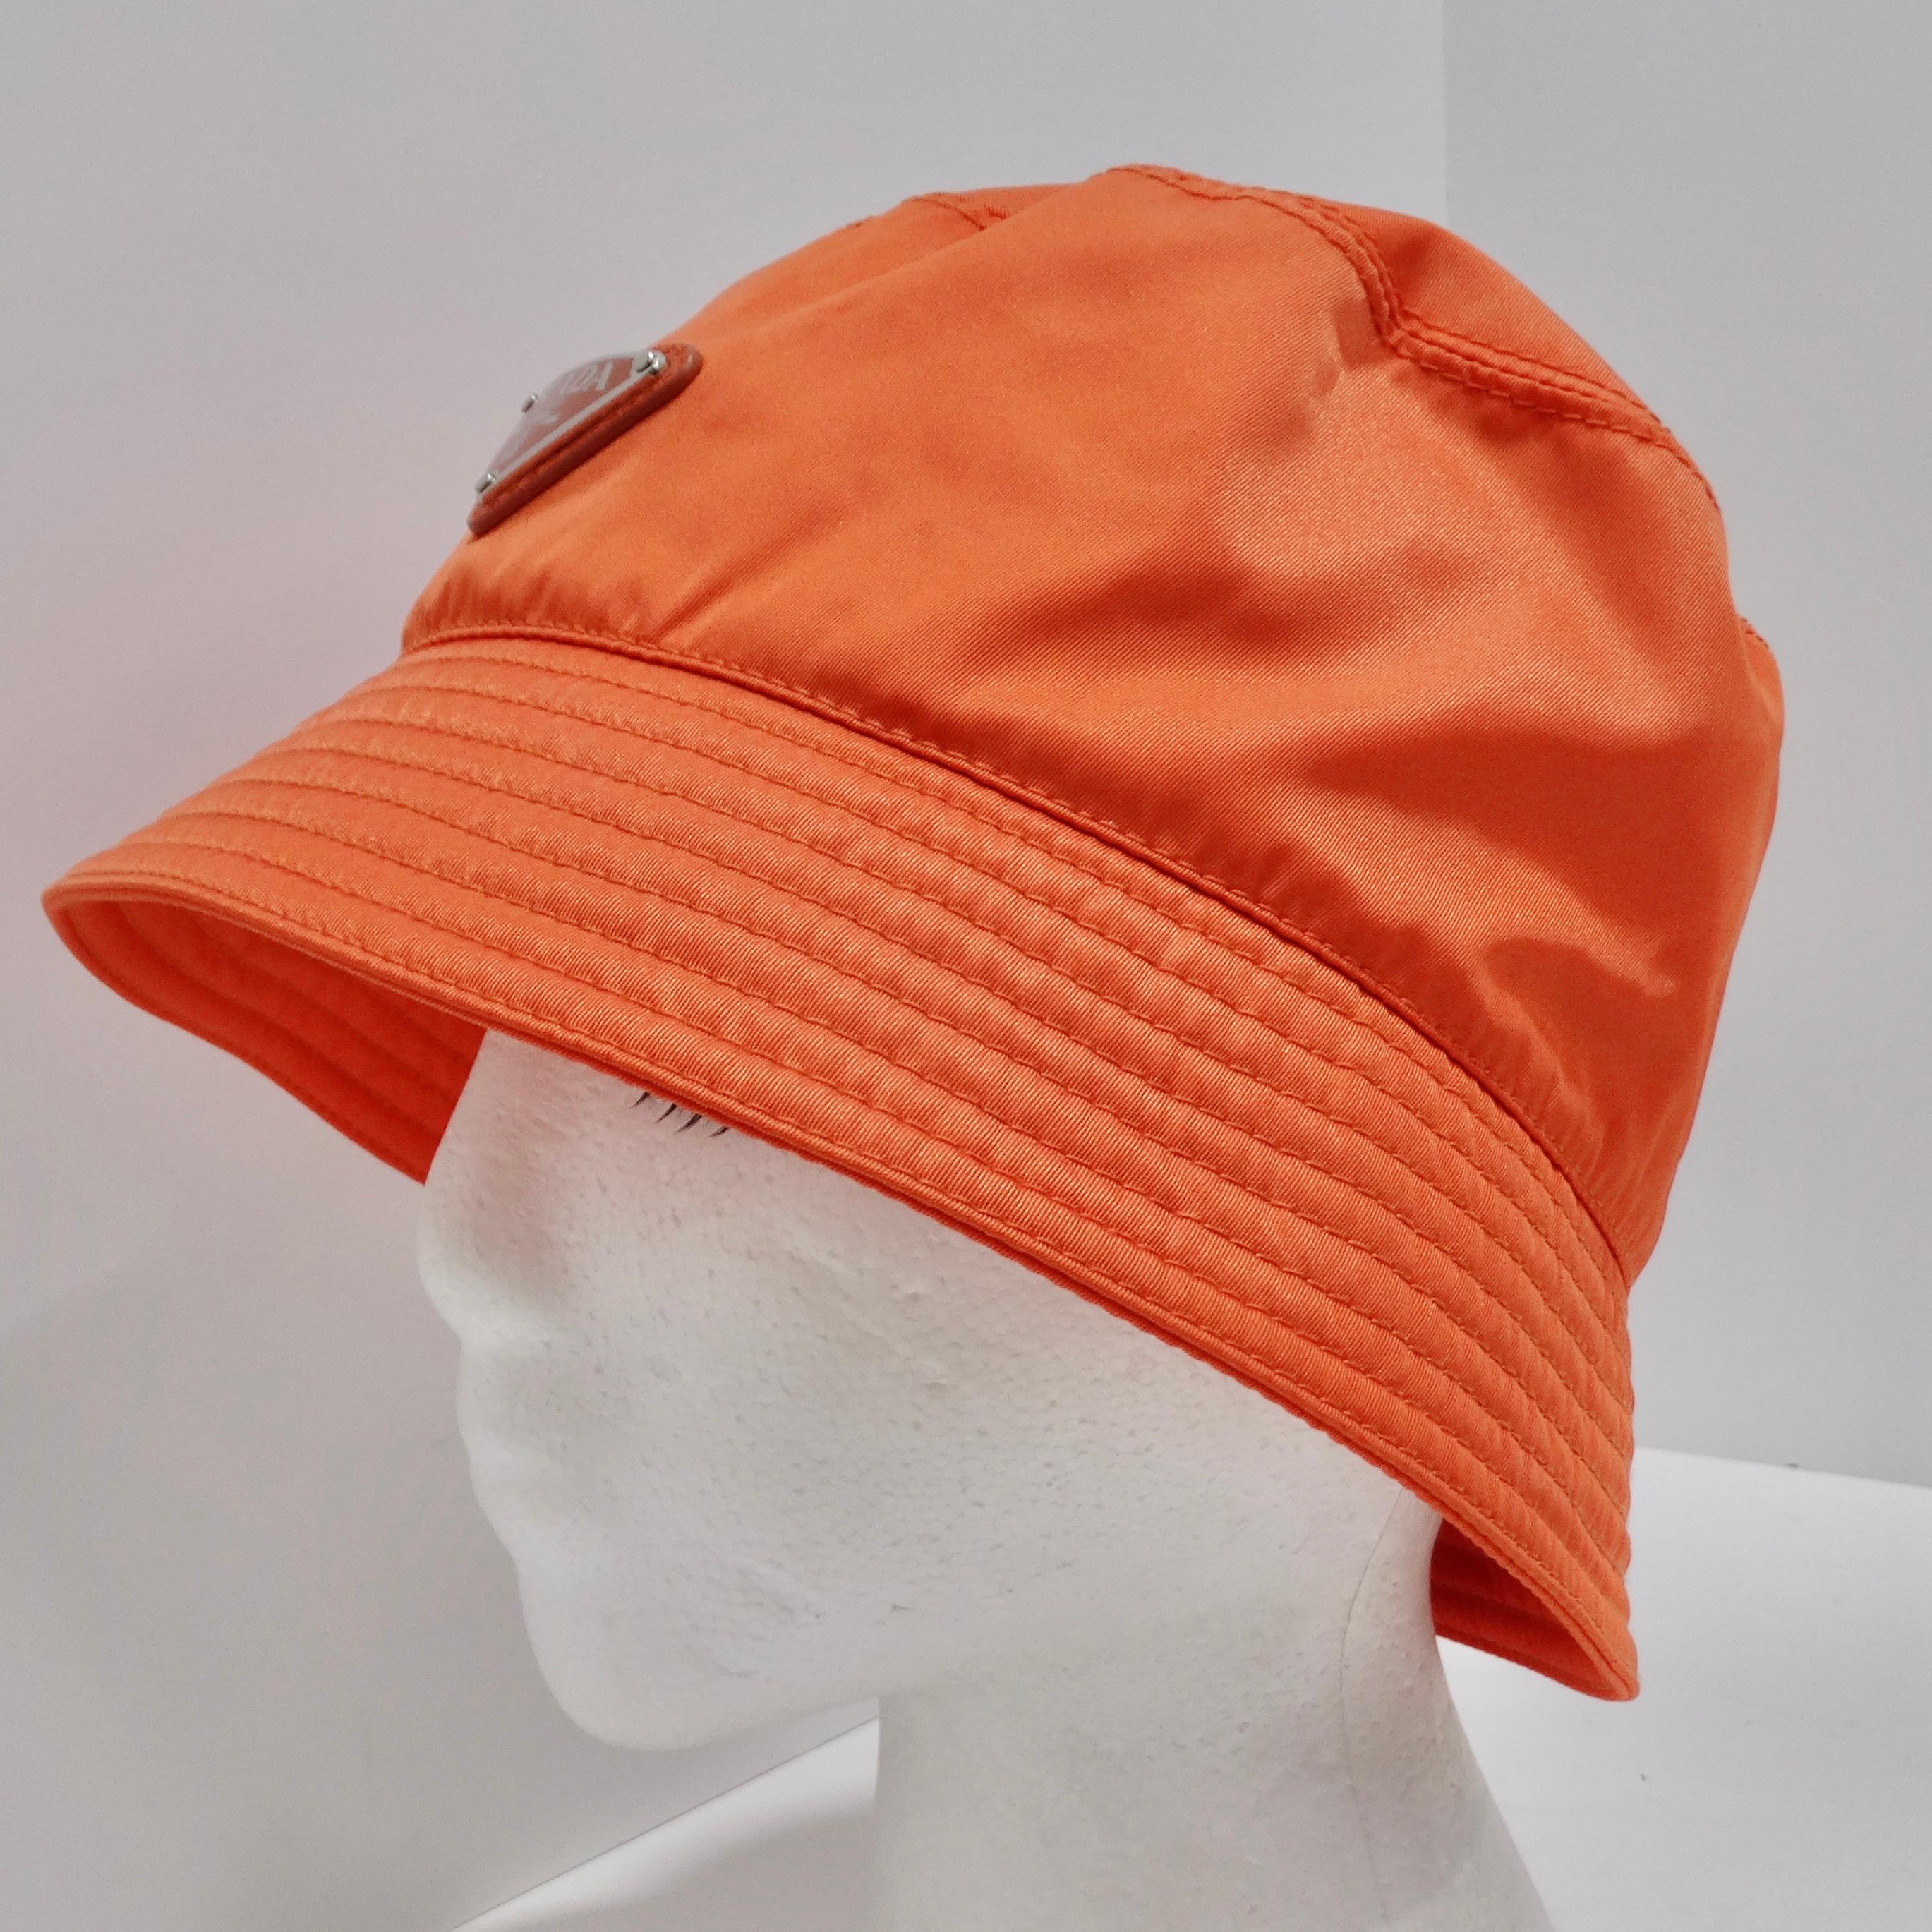 
Élevez votre style et faites une déclaration écoconsciente avec le chapeau Bucket en re-nylon de Prada, d'un orange vibrant. Ce chapeau seau classique présente la fusion parfaite de la mode et de la durabilité, ce qui en fait un accessoire